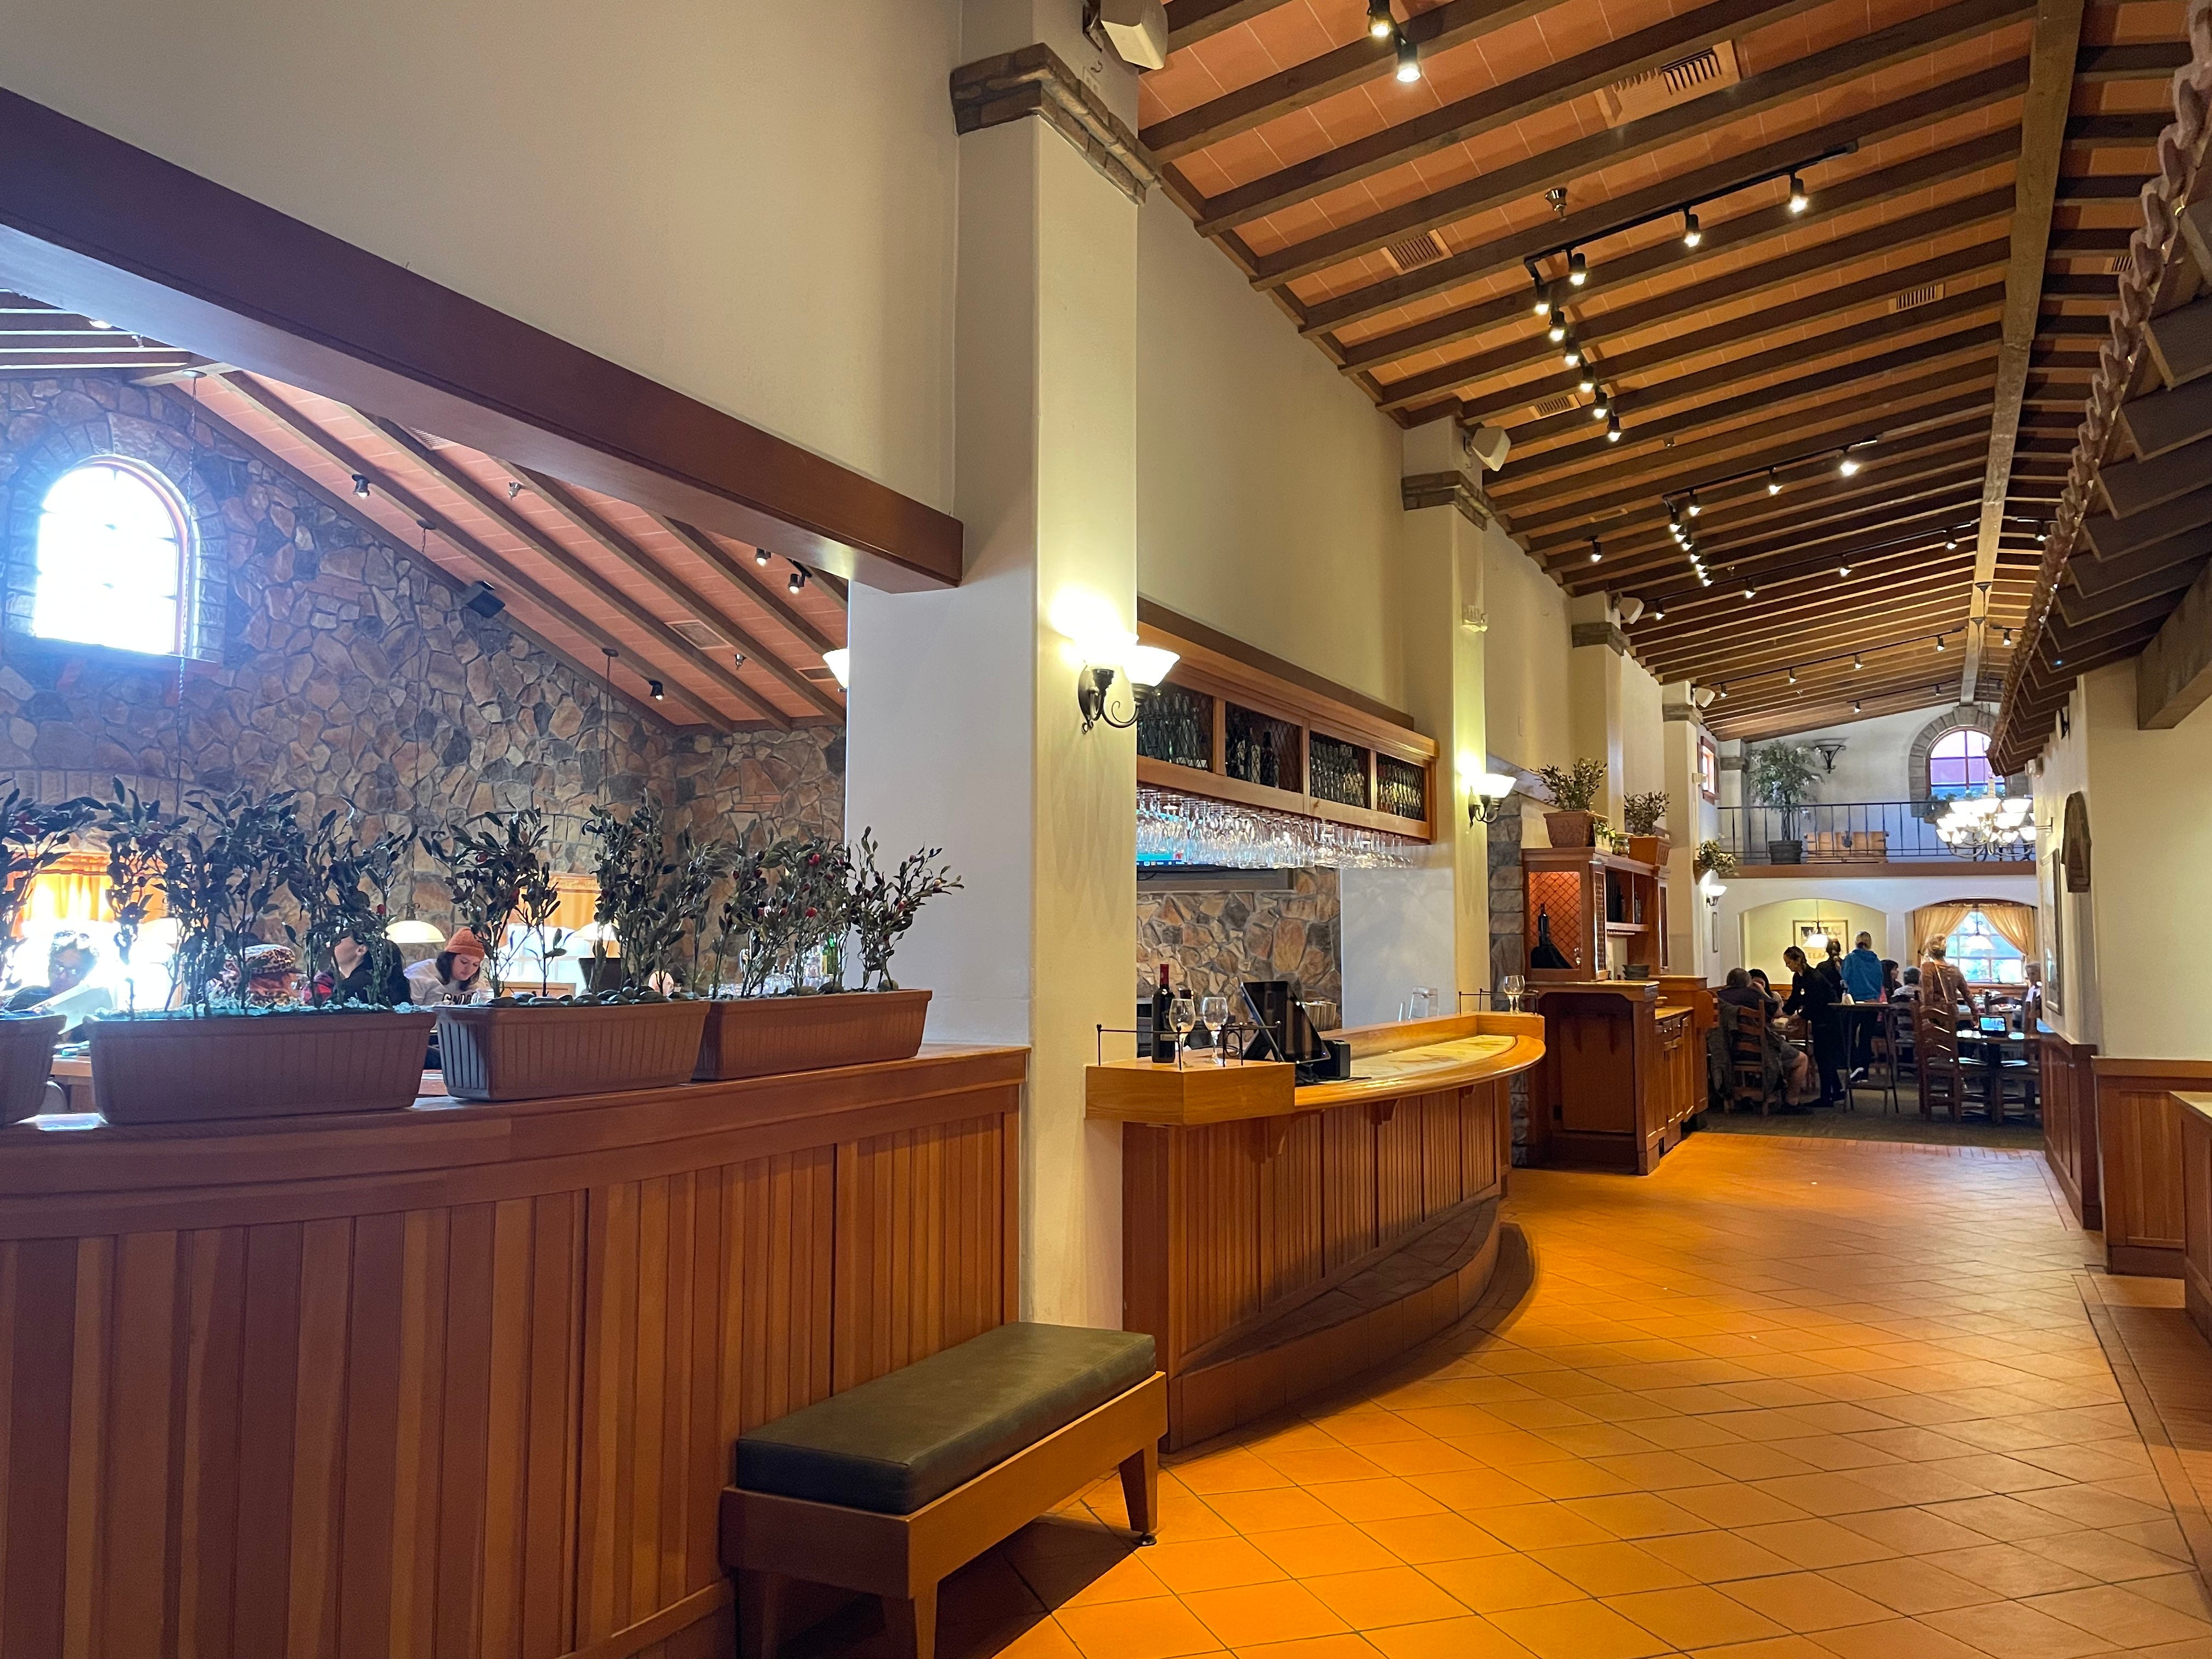 Innenflur im Olive Garden mit Holzvertäfelung und -decke, hellbraunem Fliesenboden und Pflanzen an der Wand